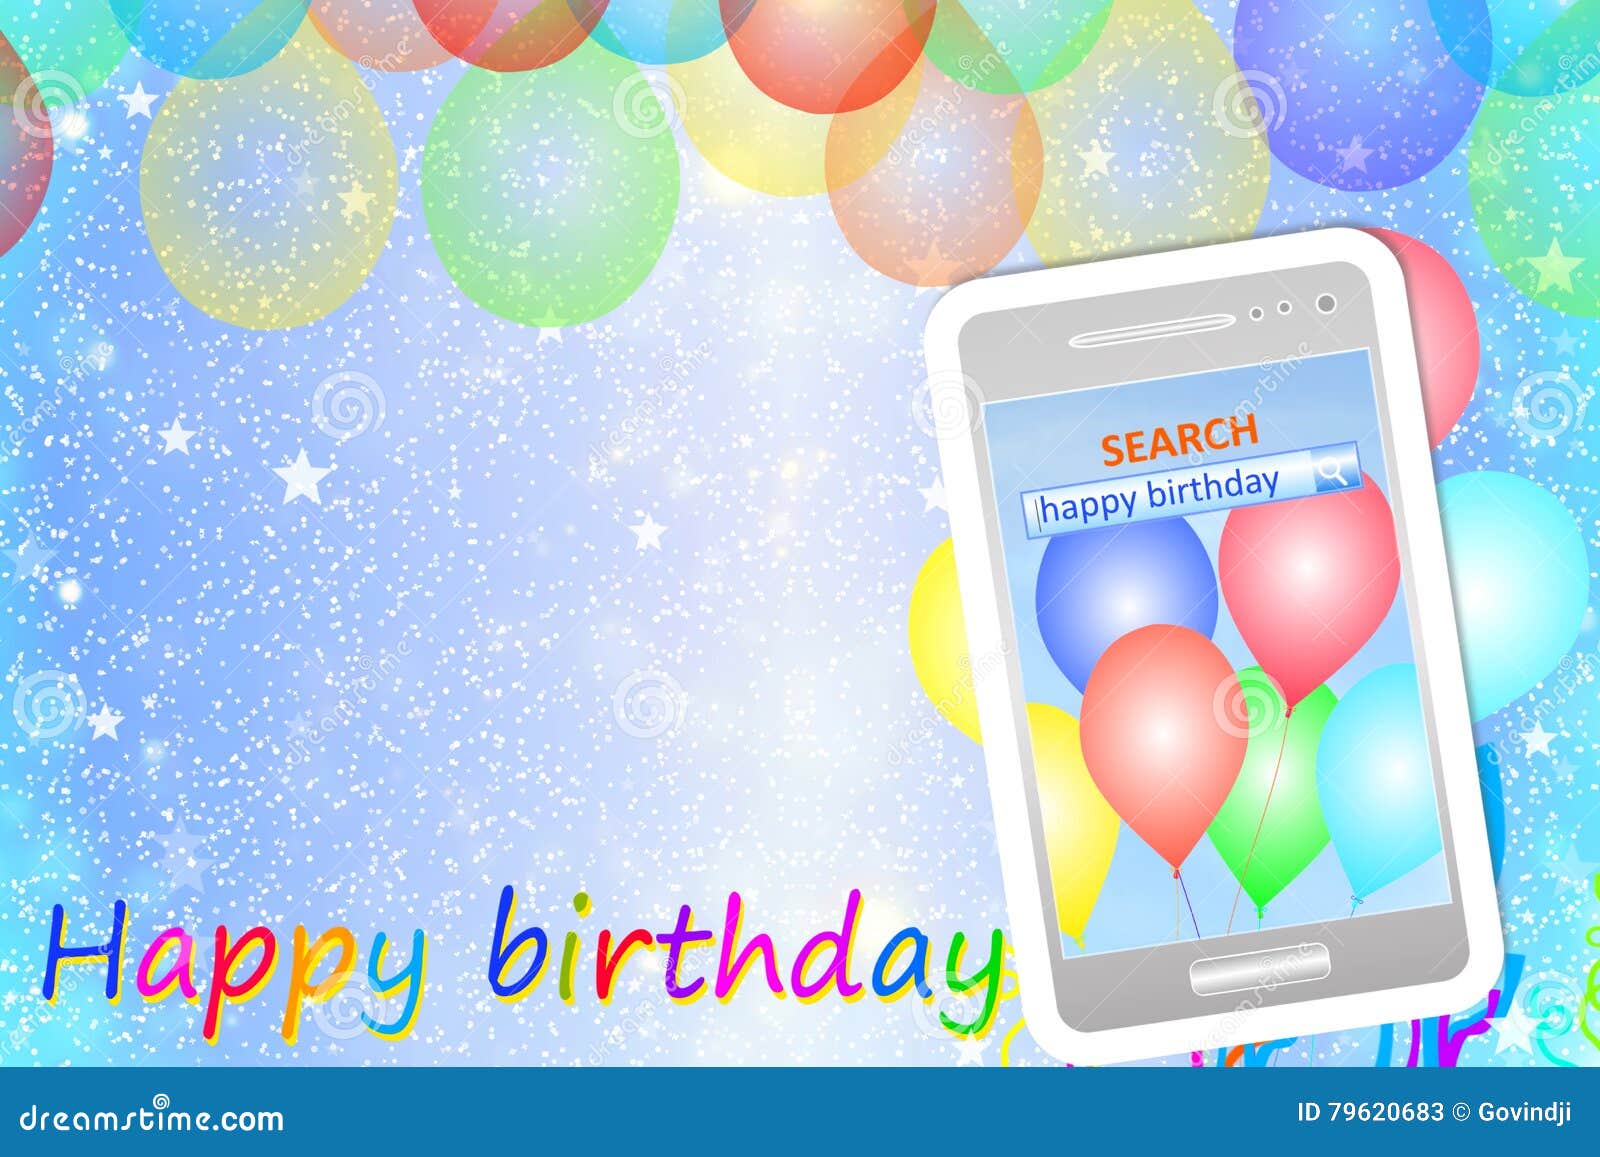 happy birthday on mobile